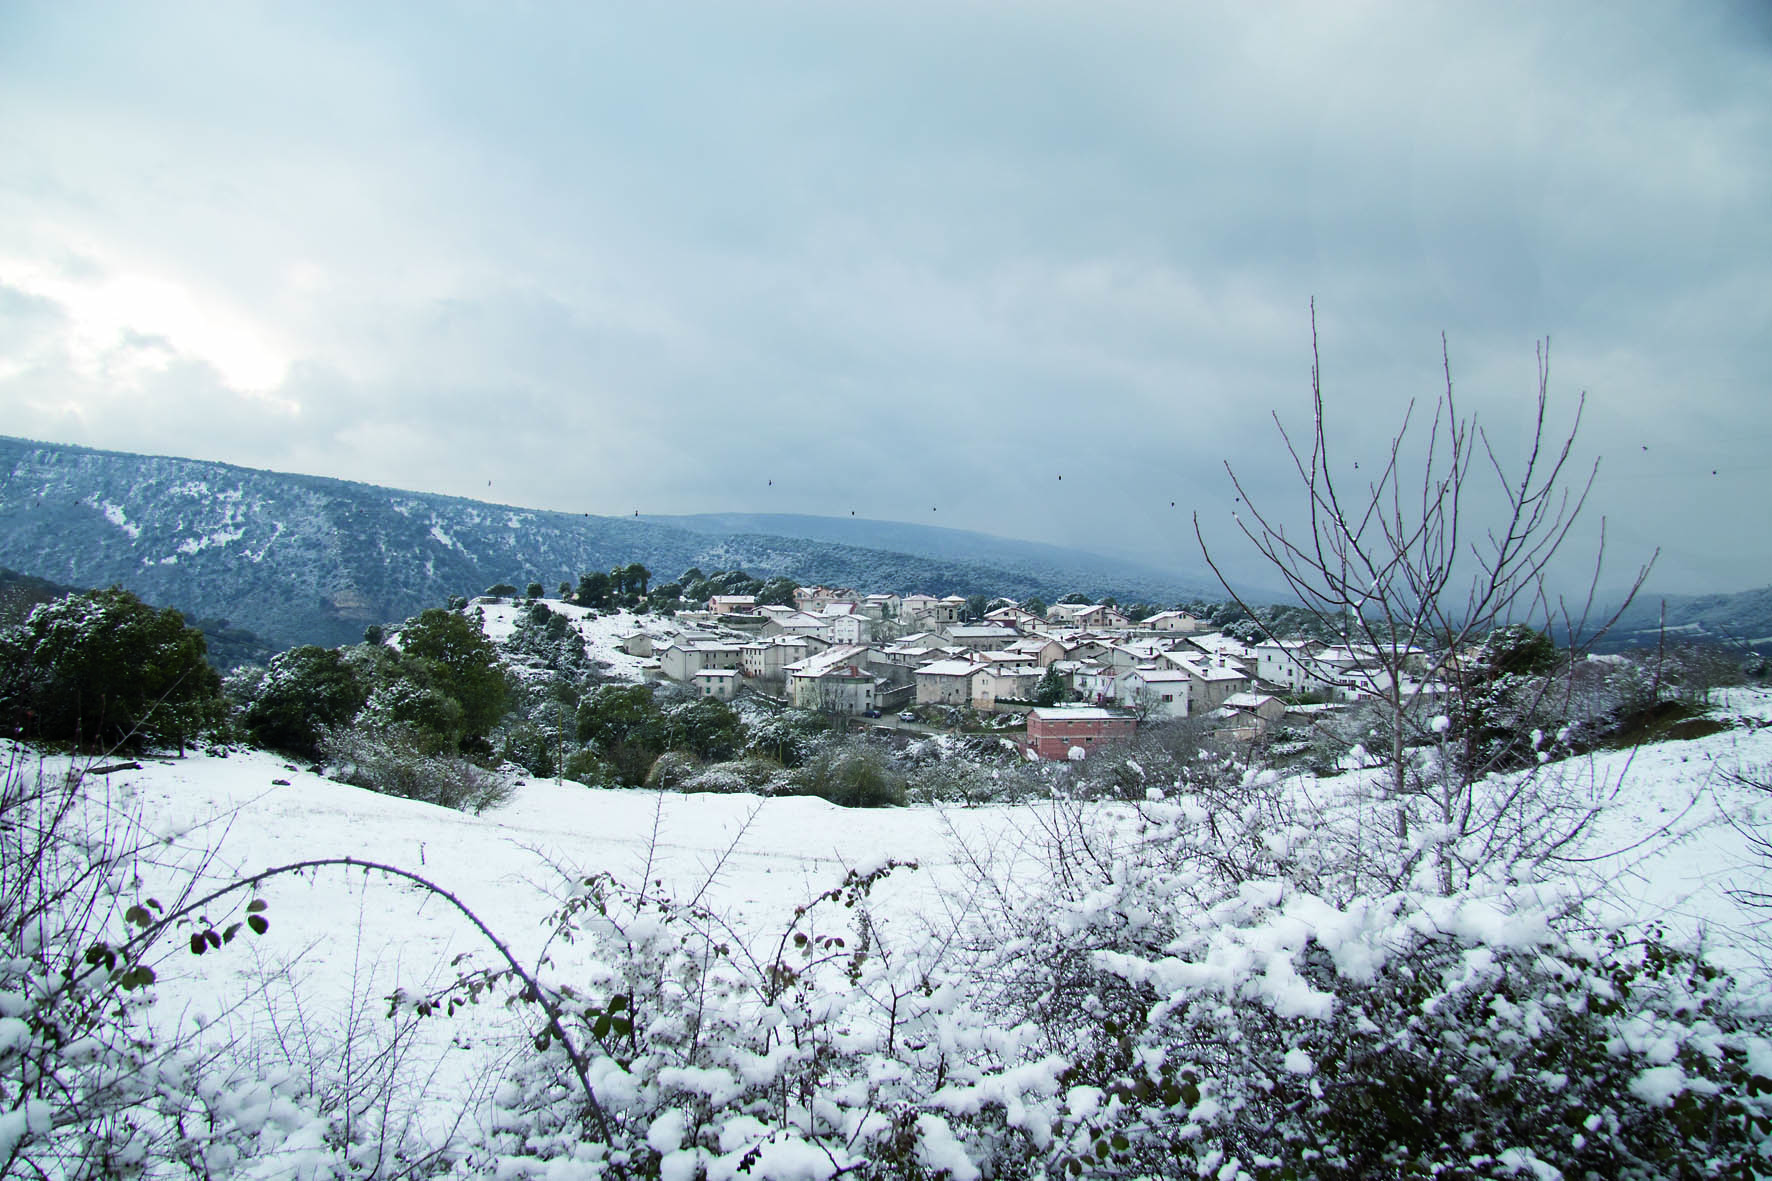 La localidad de Artaza nevada. Foto facilitada por la editorial.